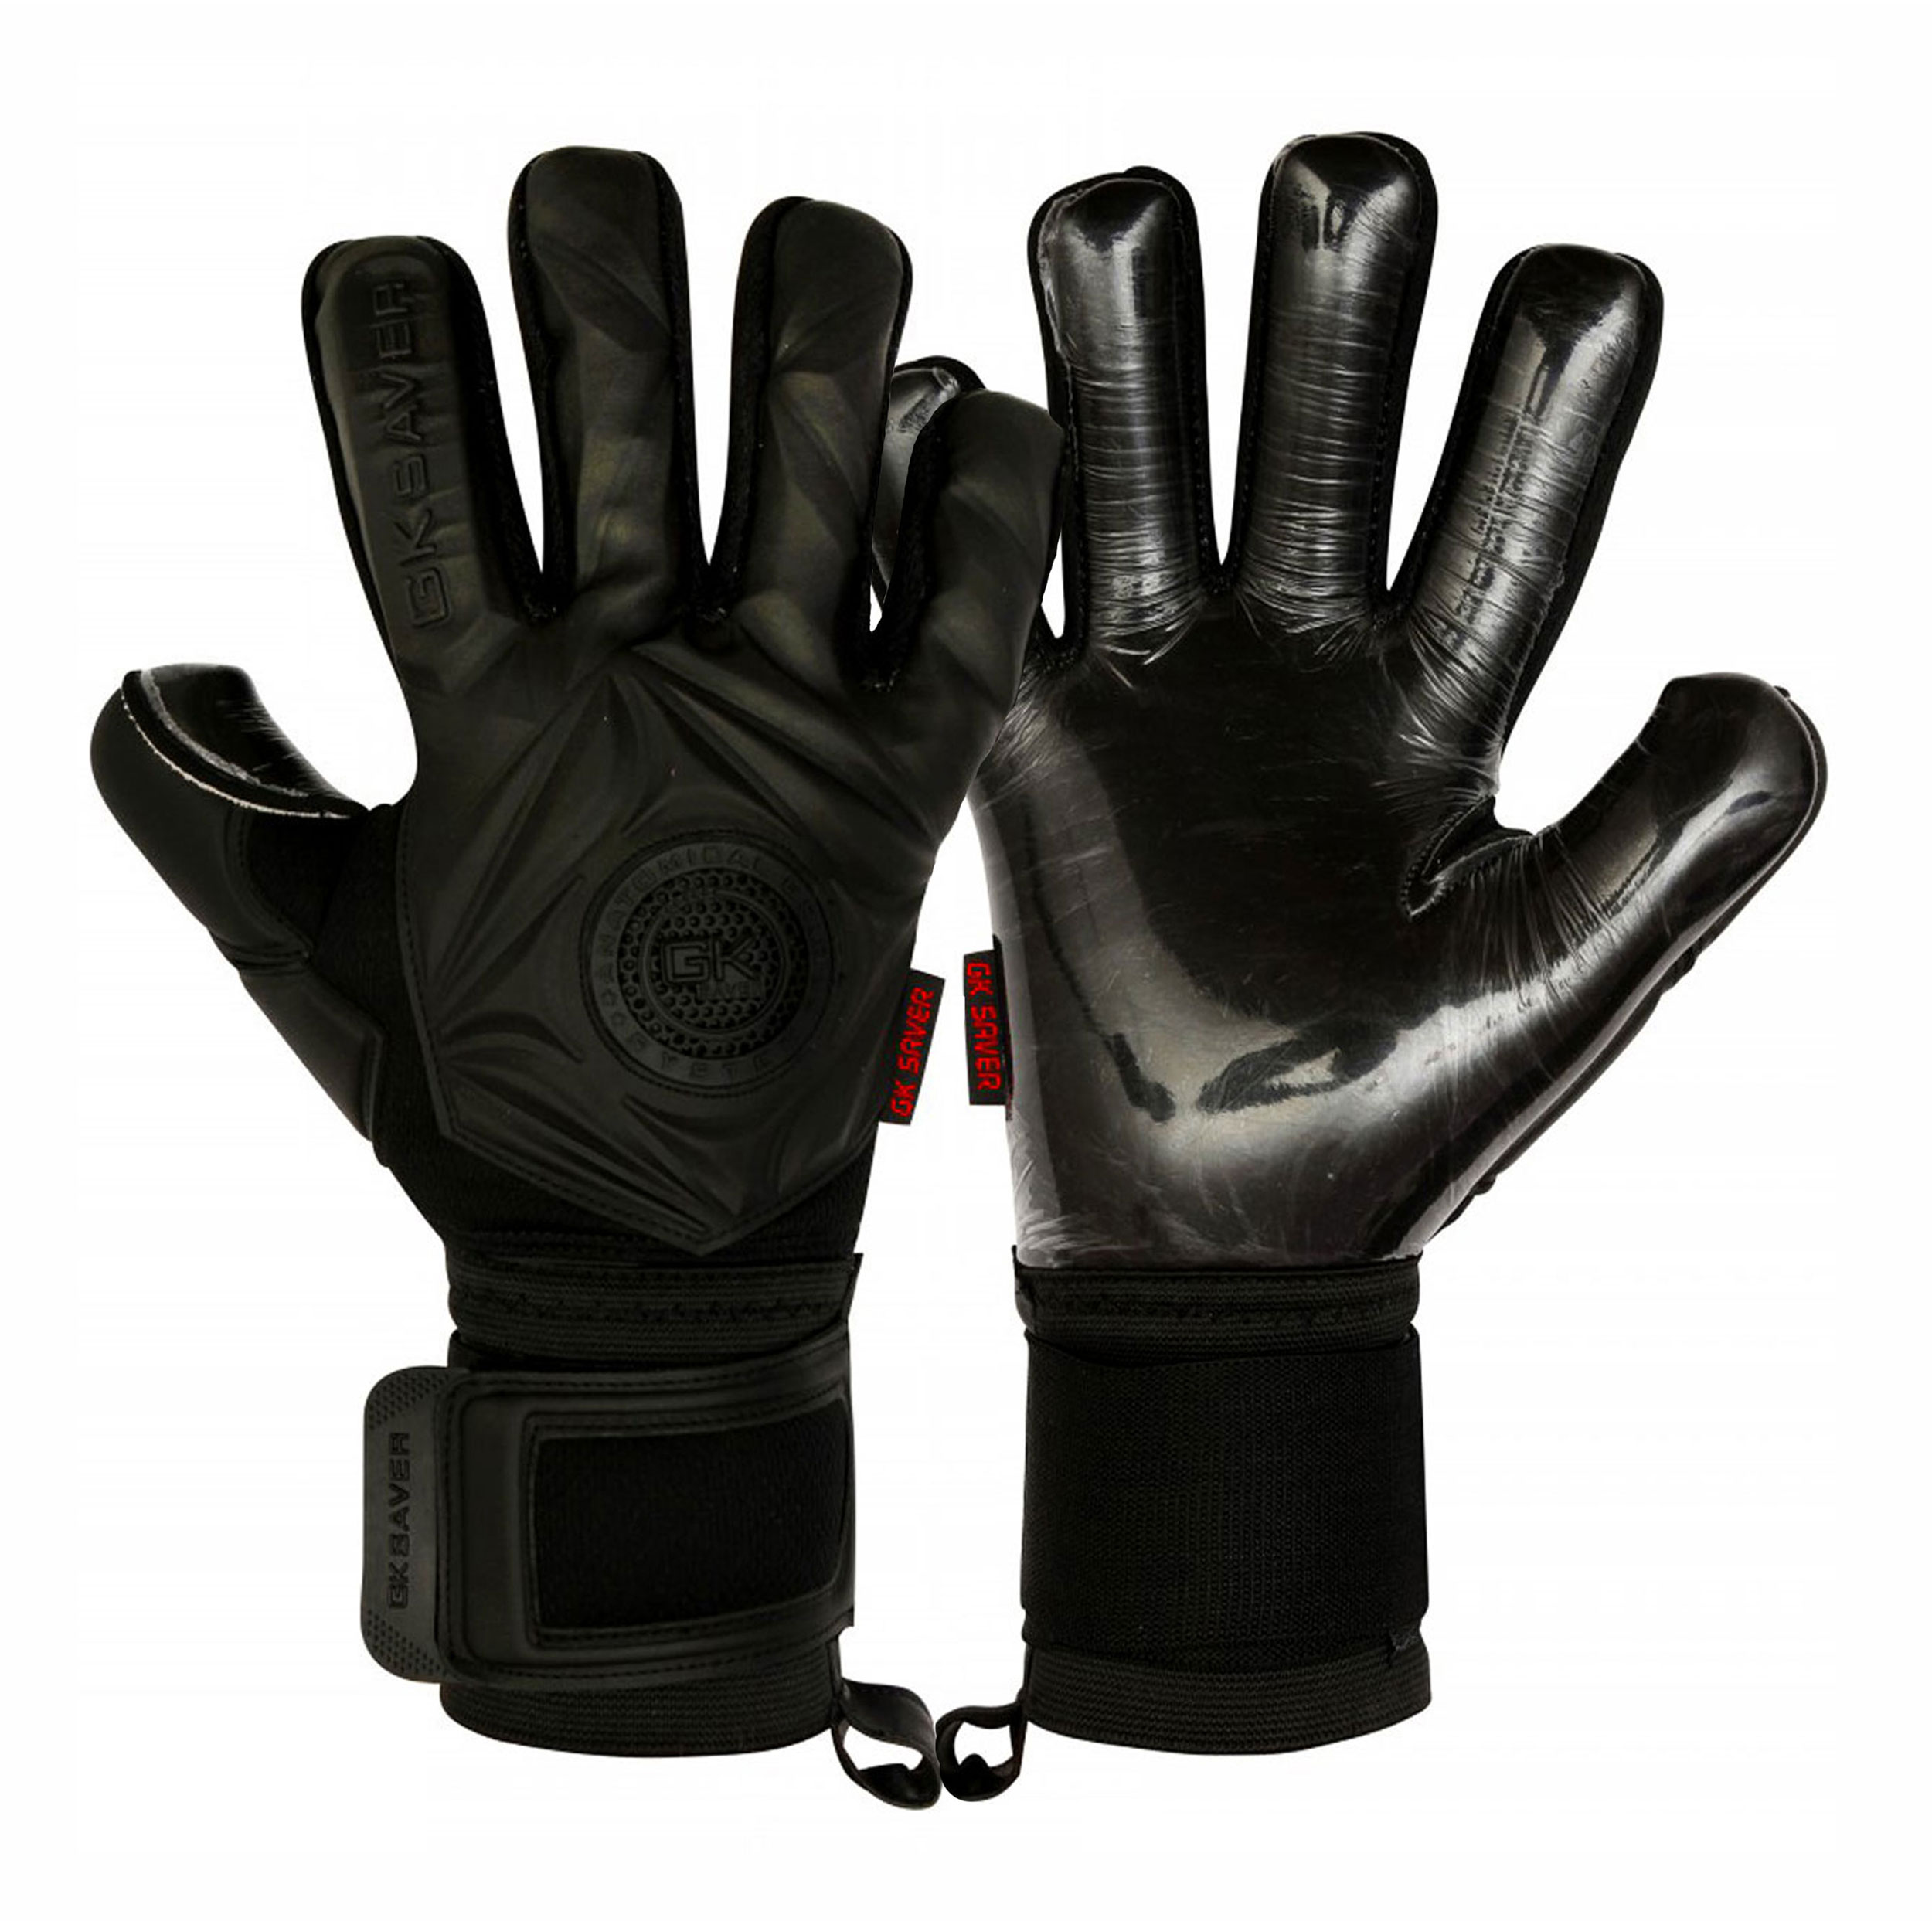 Gk Saver Prime Pro Black/Green Football Goalkeeper Gloves Size 6-11 